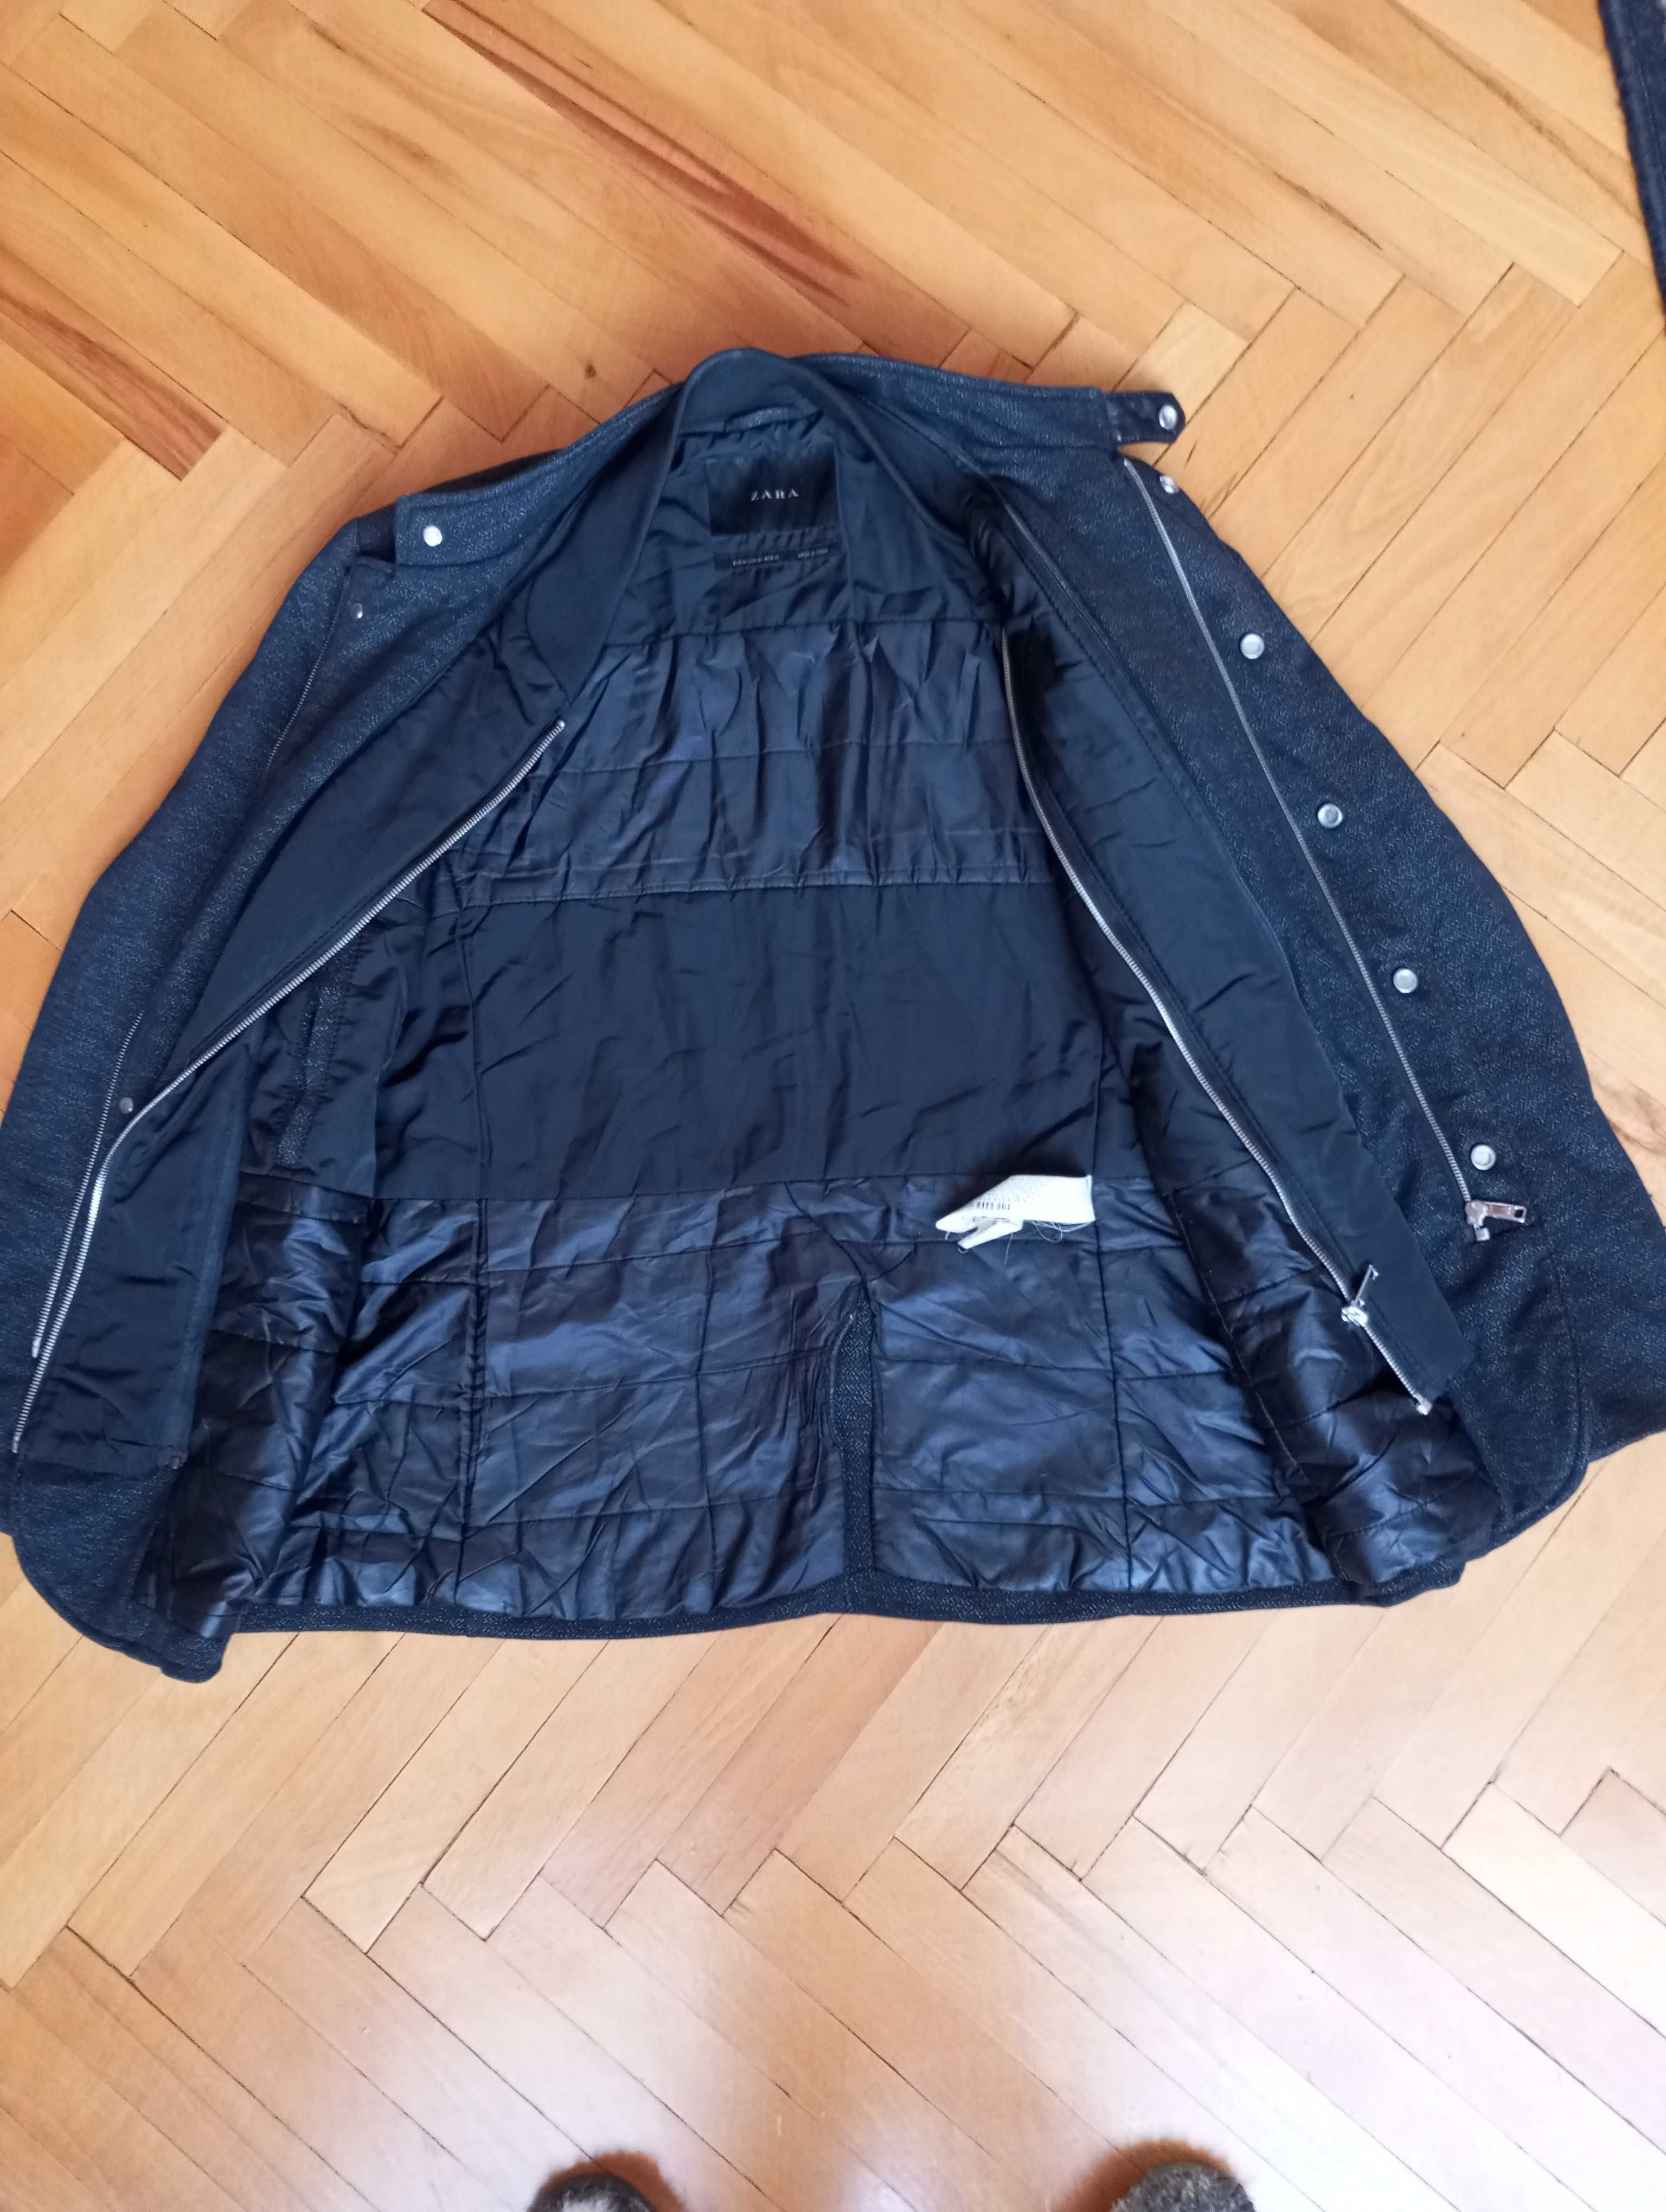 Чоловіча куртка демисезонна ZARA . Розмір М.